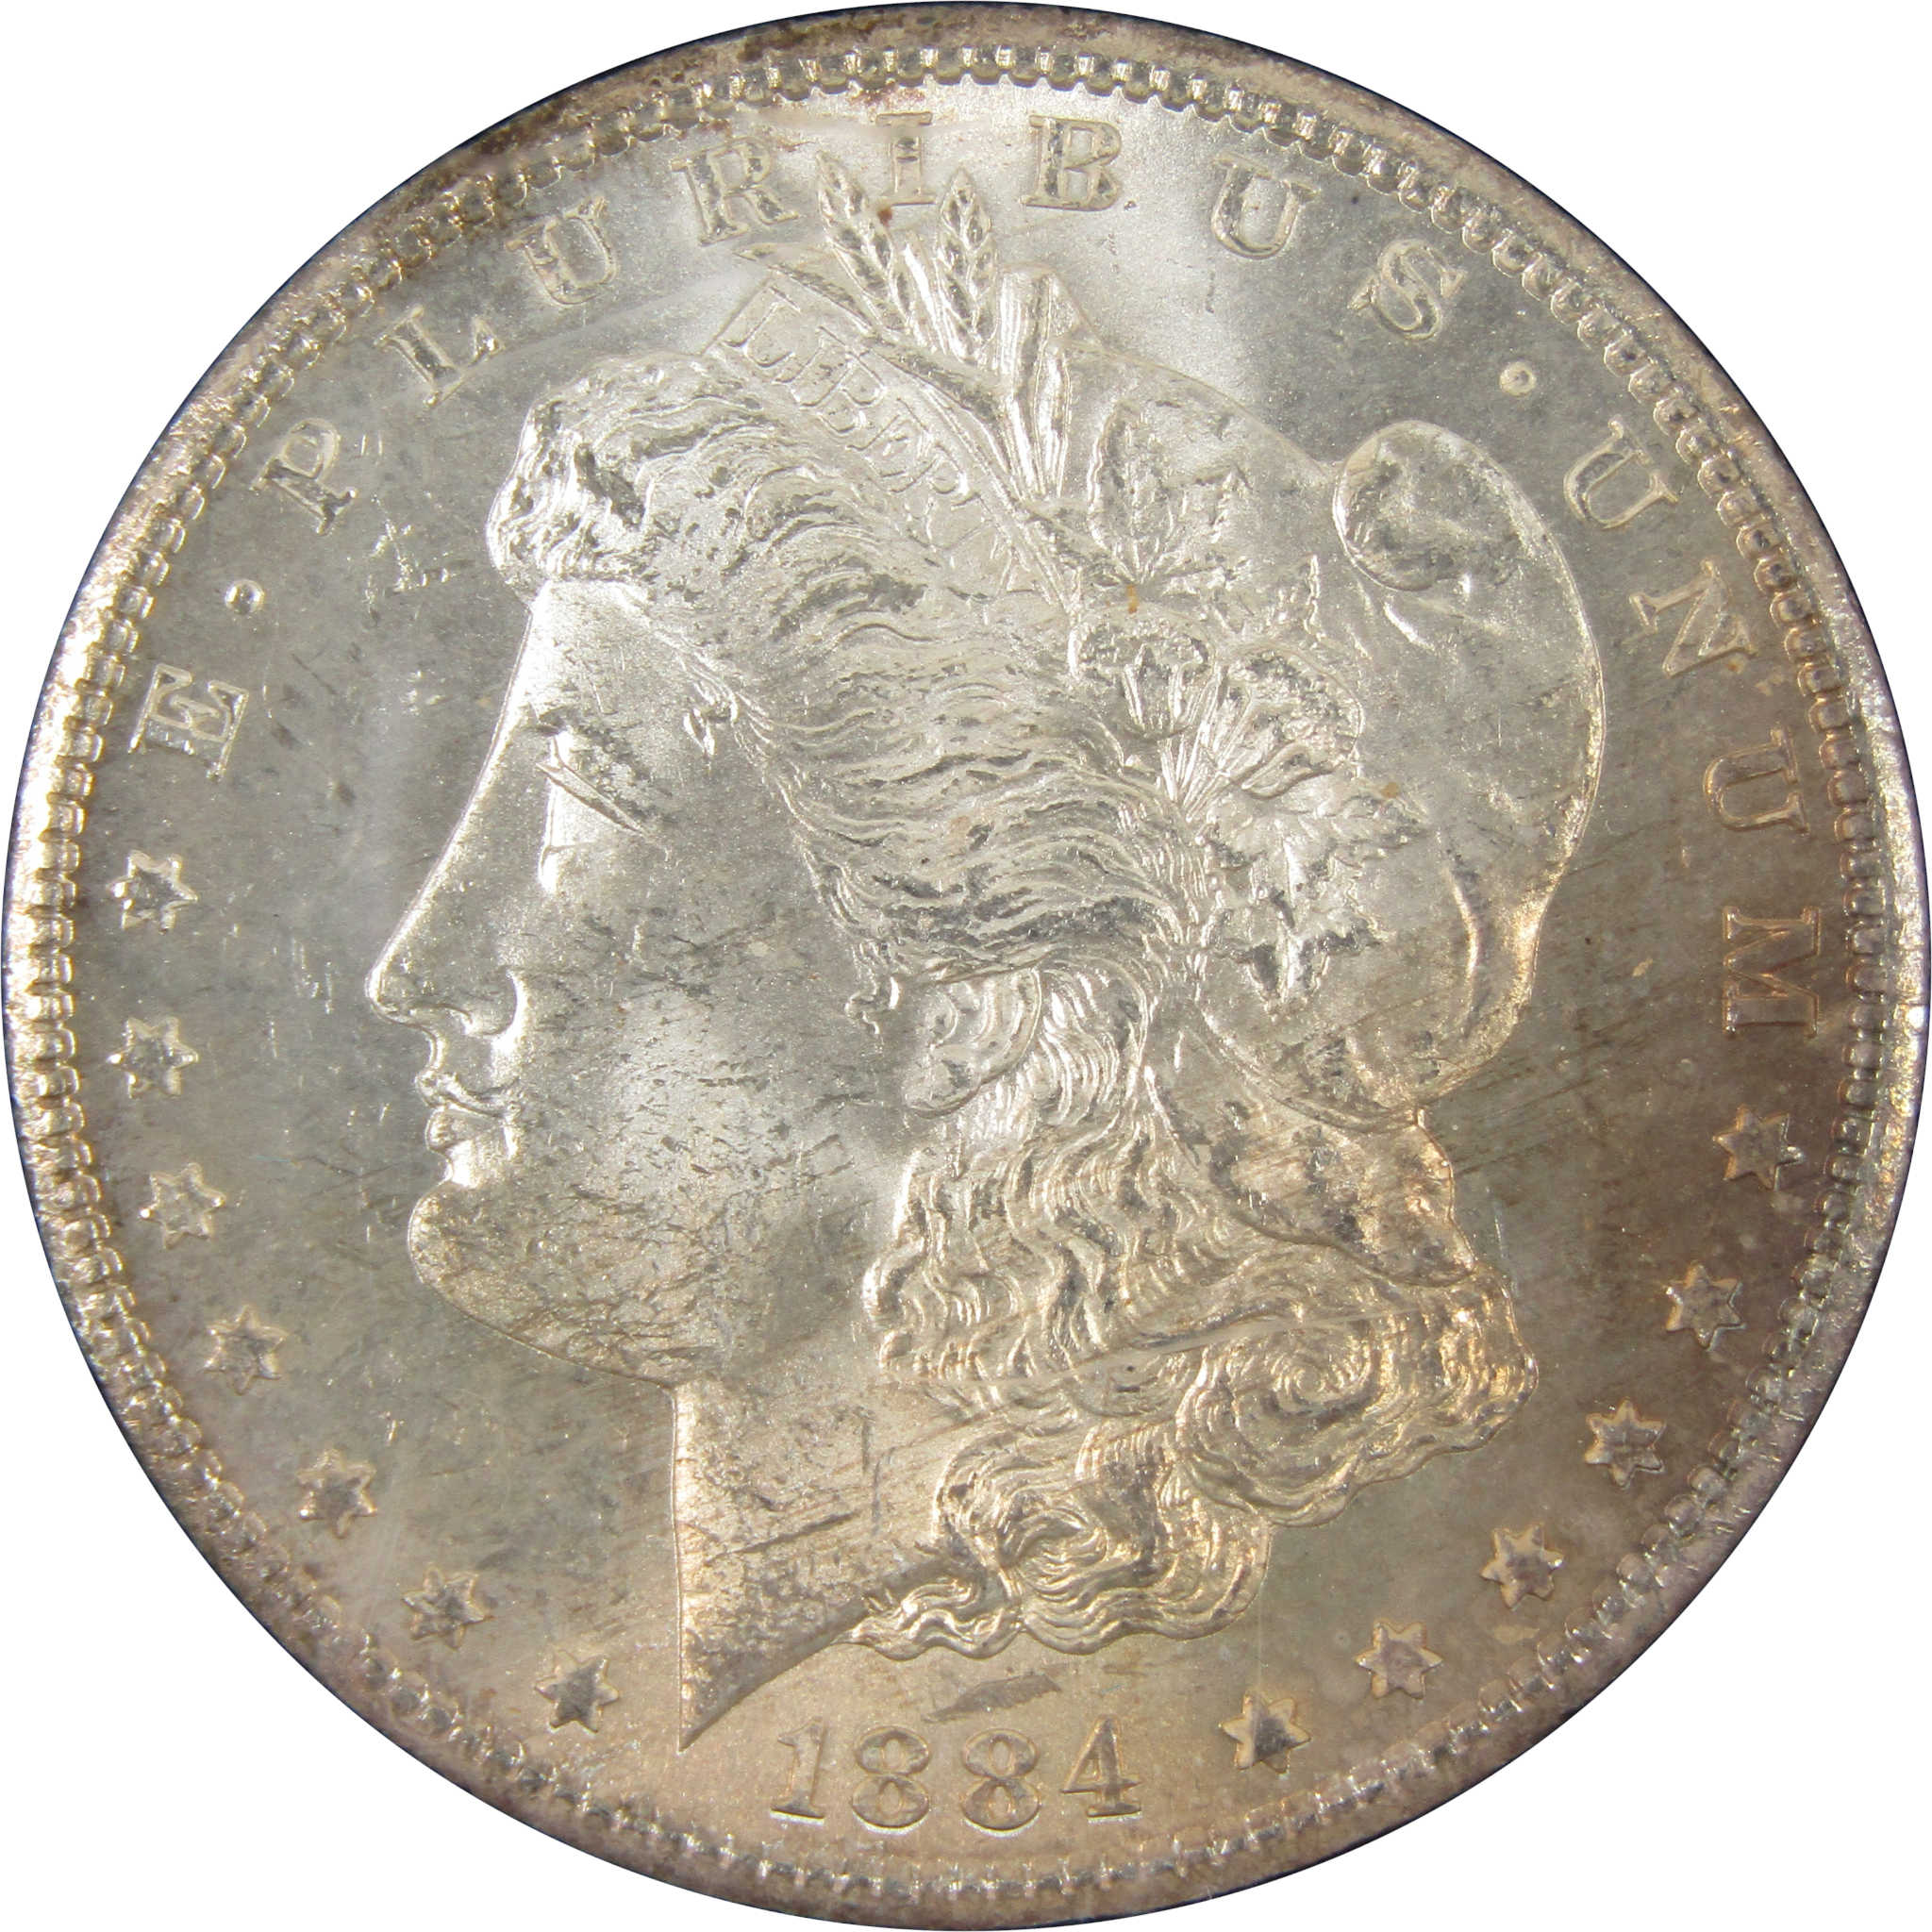 1884 CC GSA Morgan Dollar BU Uncirculated Silver $1 Coin SKU:CPC4399 - Morgan coin - Morgan silver dollar - Morgan silver dollar for sale - Profile Coins &amp; Collectibles